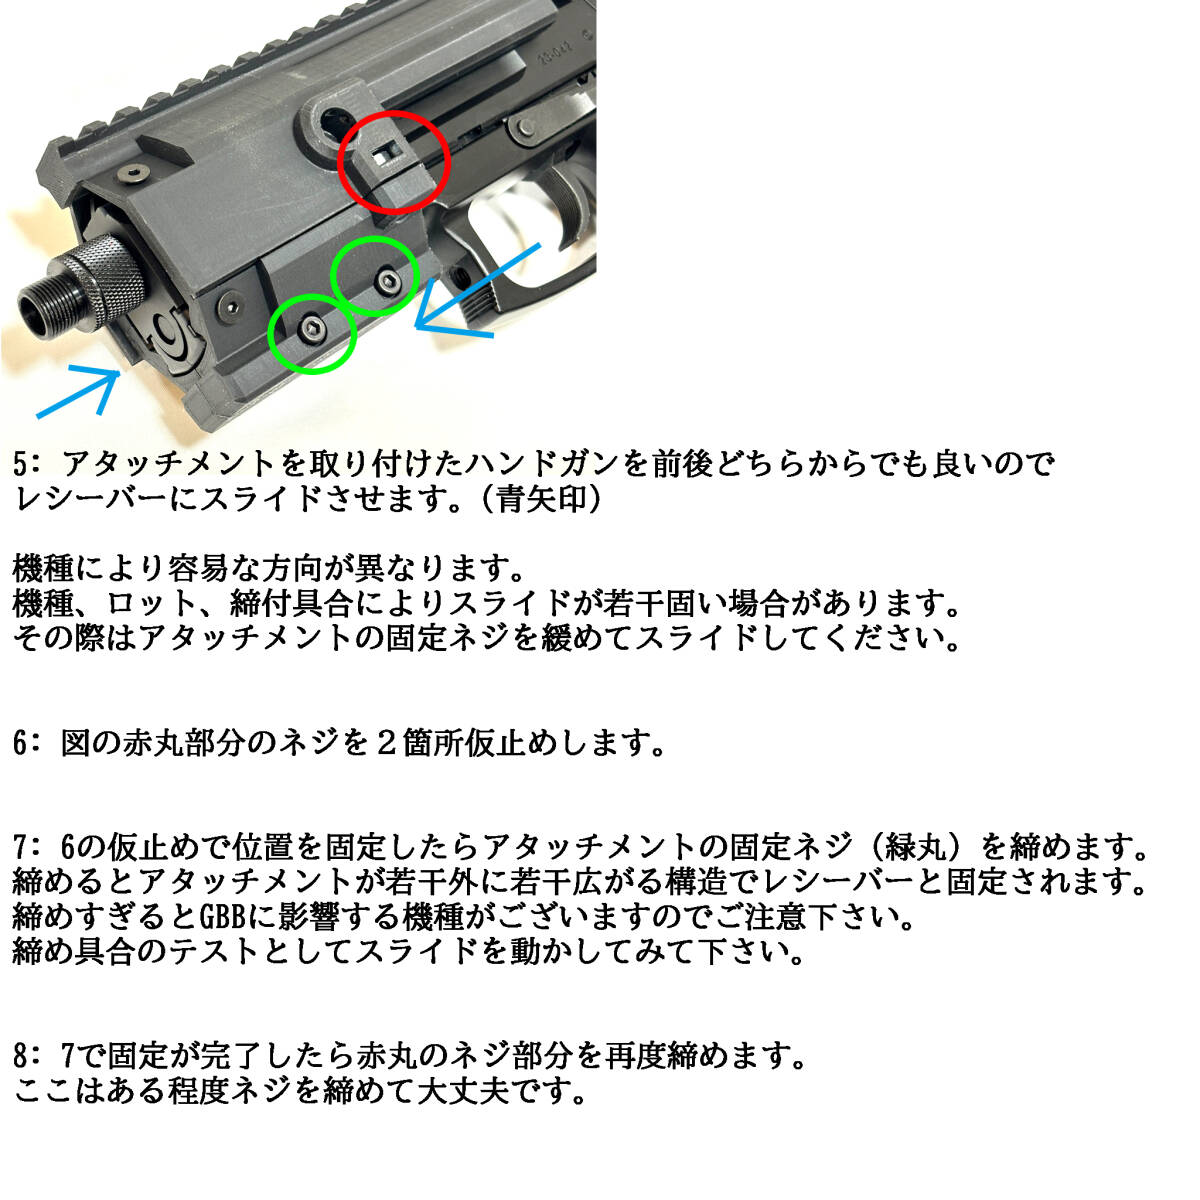 [東京マルイ Glock グロック 17 18c 19] ユニバーサル カービン コンバージョン キット_画像8